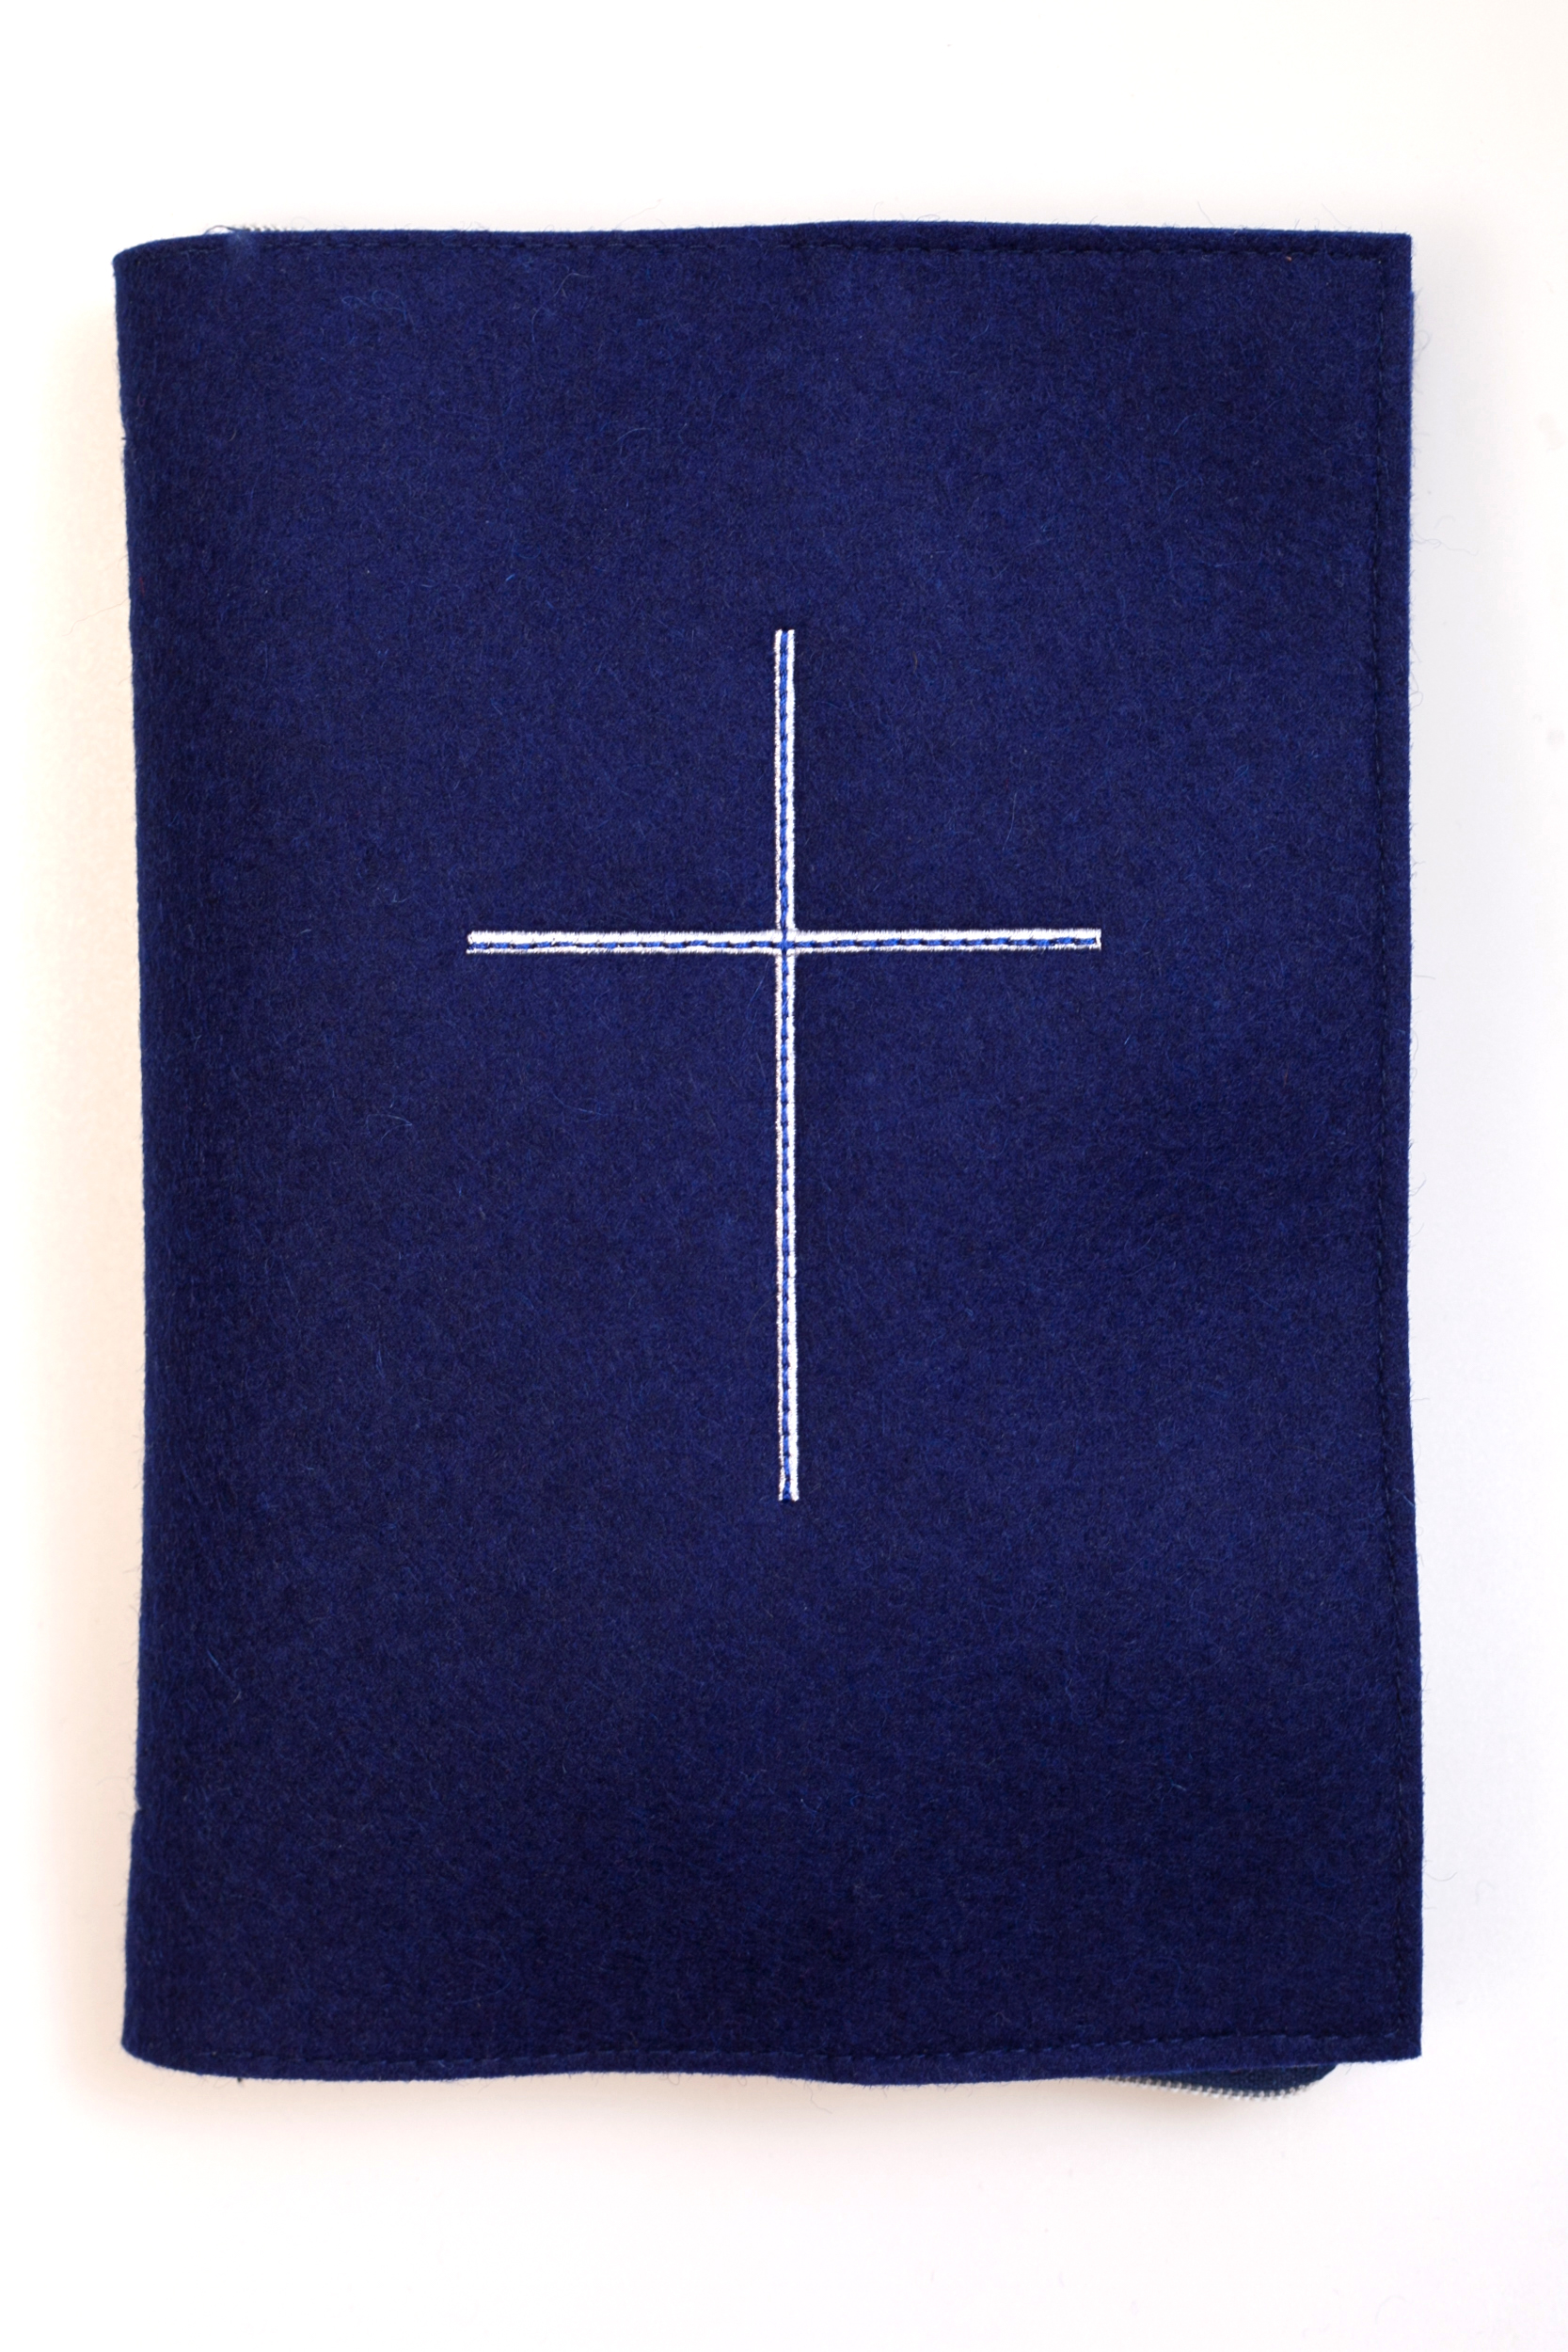 Gotteslobhülle - Großdruck & Blauer Woll-Filz mit Kreuz